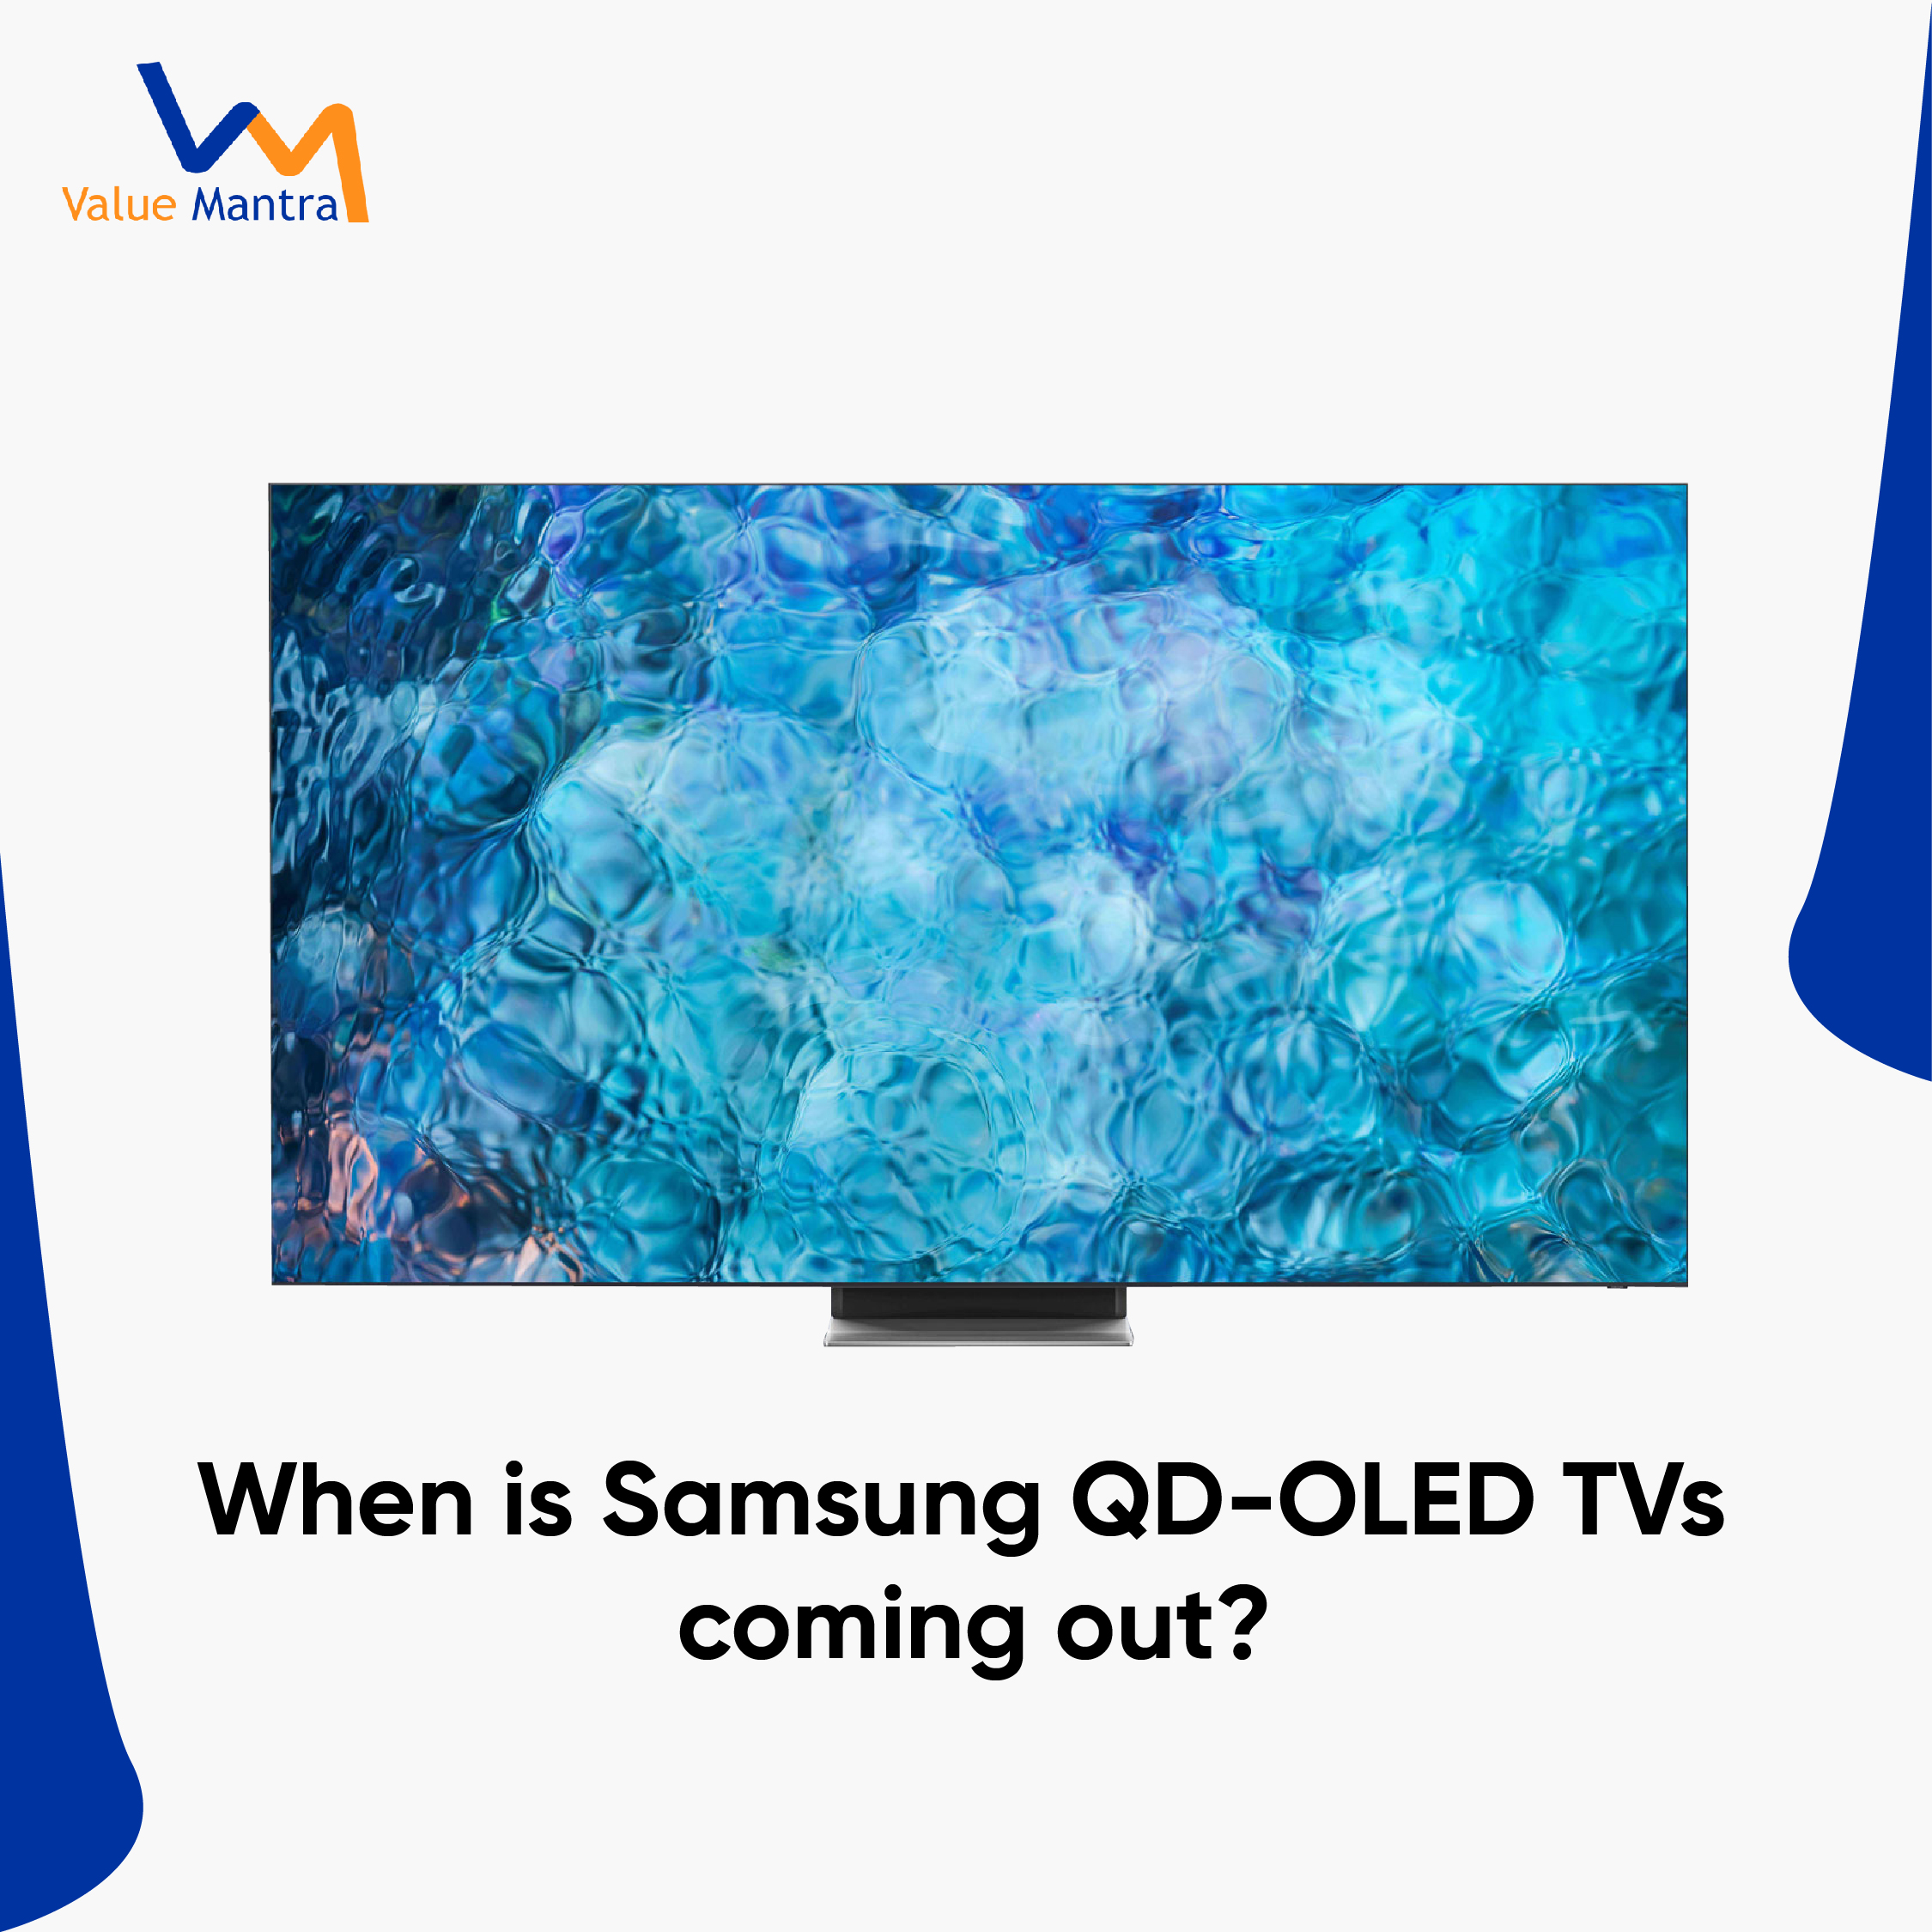 Samsung QD-LED TVS